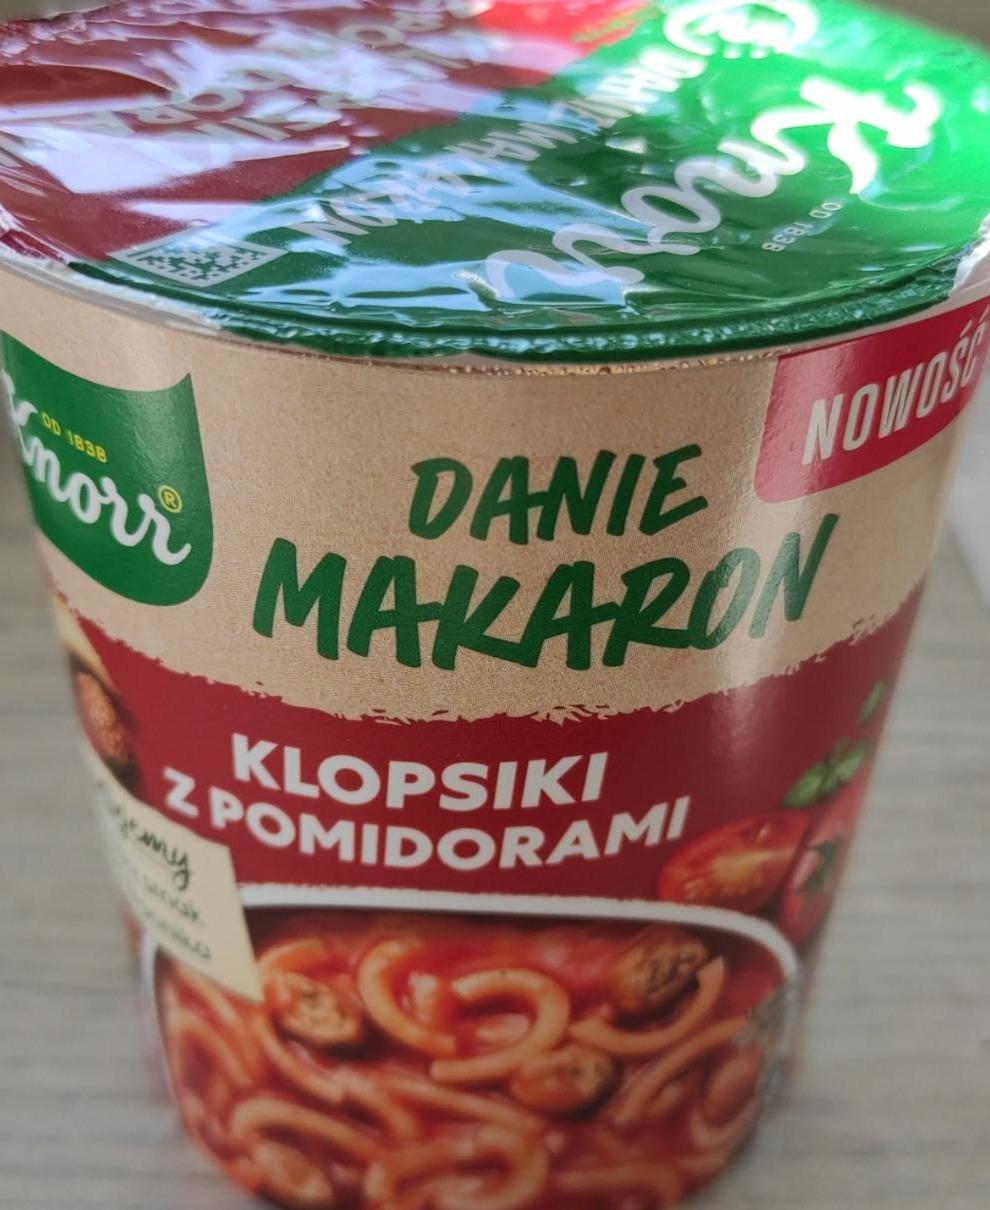 Zdjęcia - Danie makaron klopsiki z pomidorami Knorr